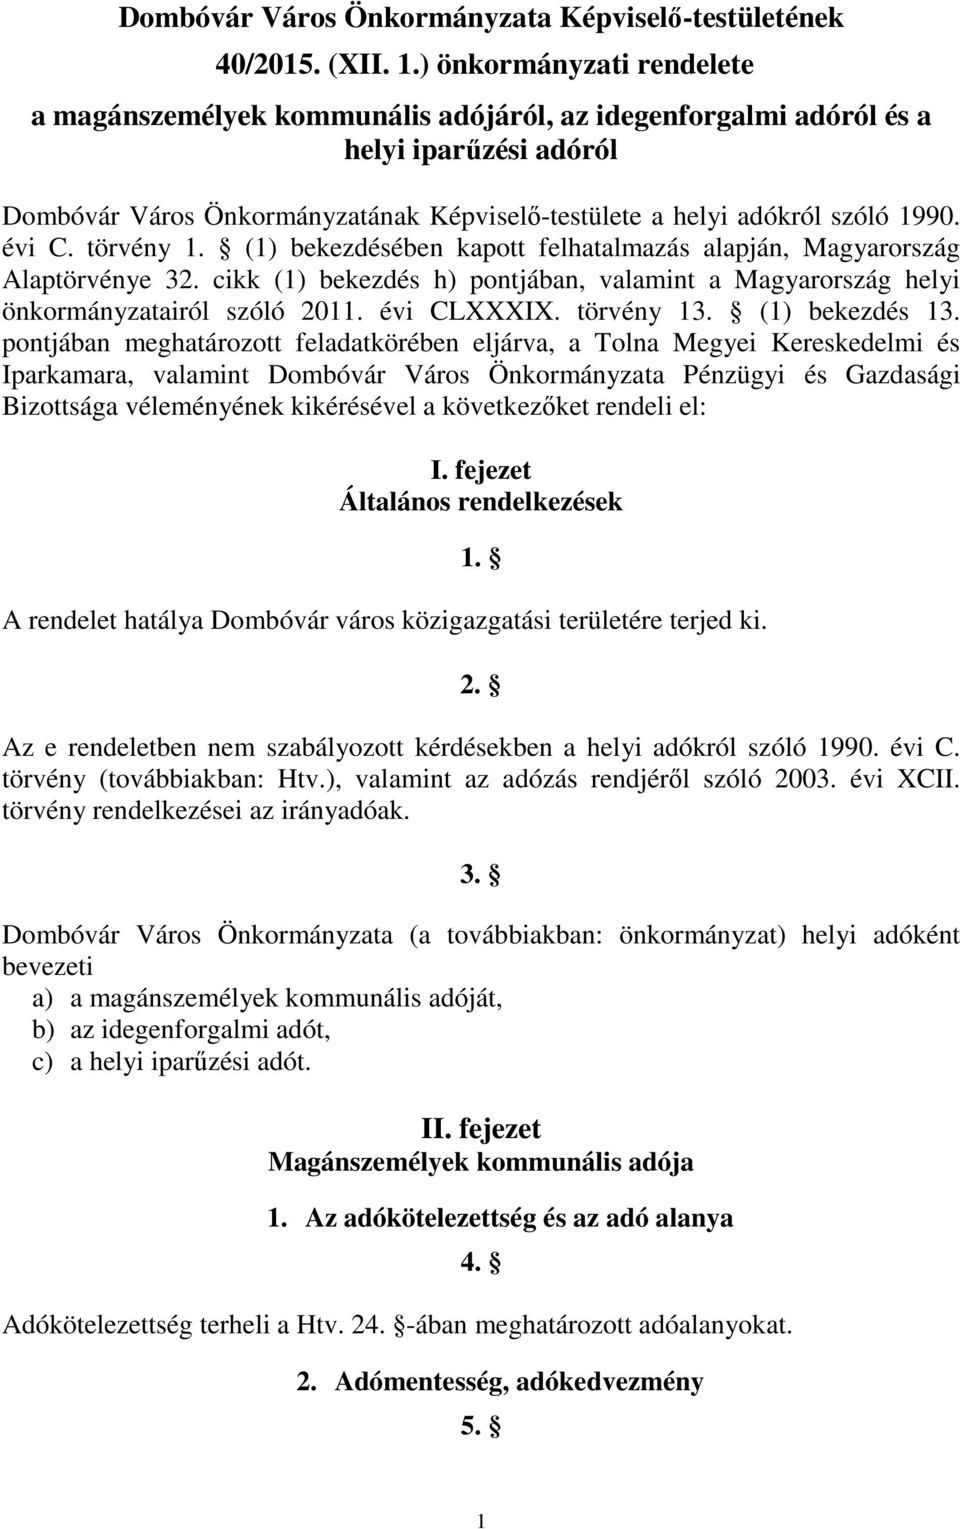 évi C. törvény 1. (1) bekezdésében kapott felhatalmazás alapján, Magyarország Alaptörvénye 32. cikk (1) bekezdés h) pontjában, valamint a Magyarország helyi önkormányzatairól szóló 2011. évi CLXXXIX.